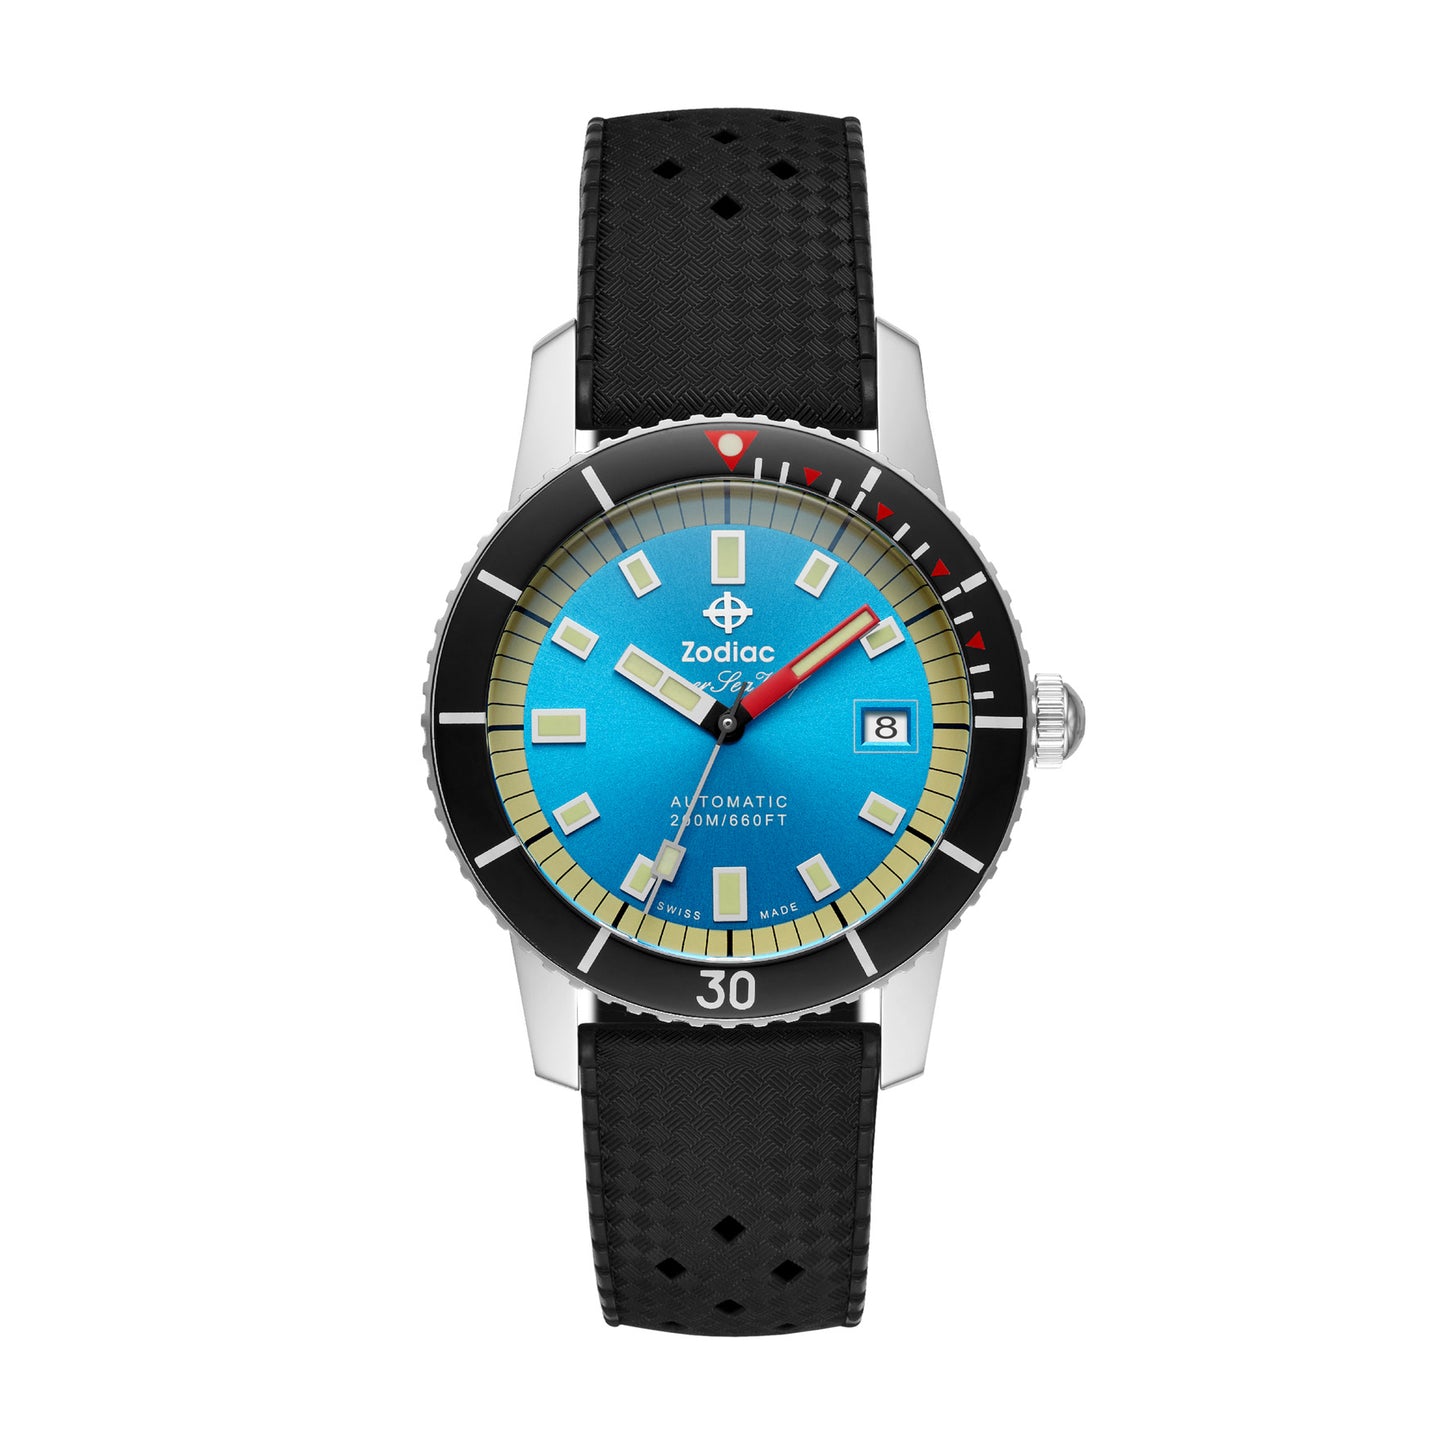 Zodiac - Z09275 - Super Sea Wolf 53 Compression Automatic Black Rubber Watch